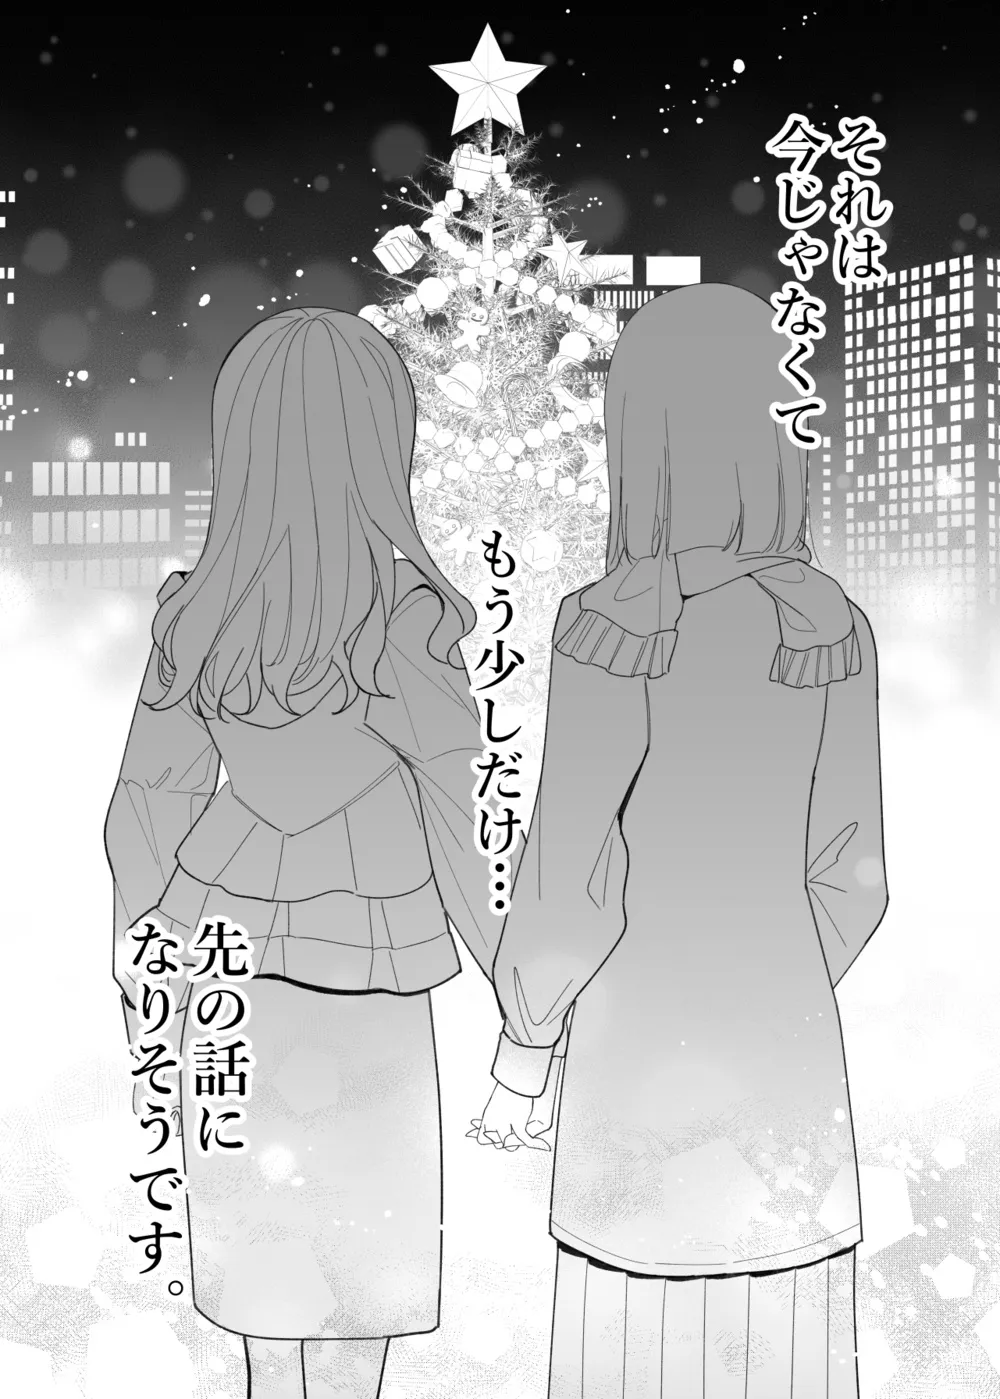 『拗らせ片想い幼馴染百合クリスマス漫画』(12/12)